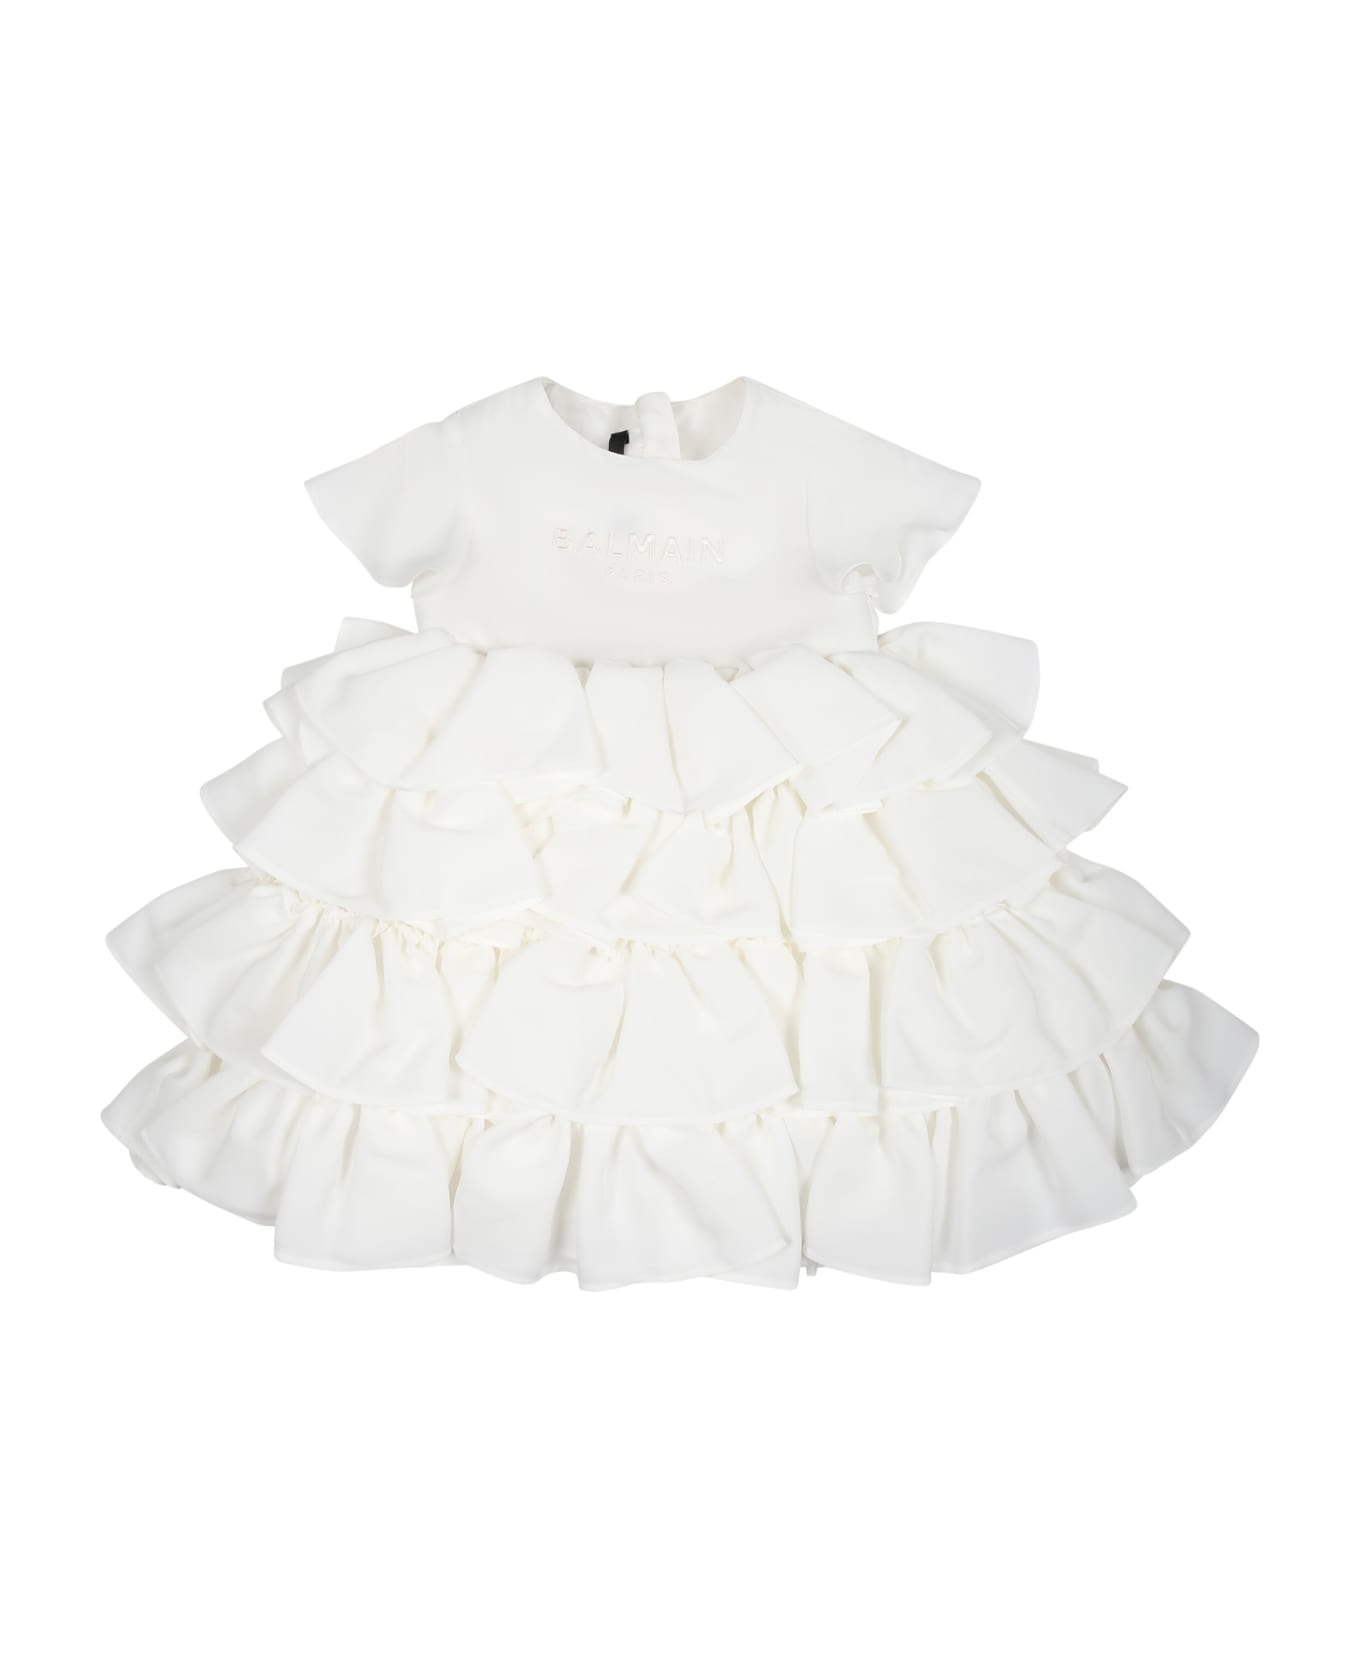 Balmain Elegant White Dress For Baby Girl With Logo - Ivory